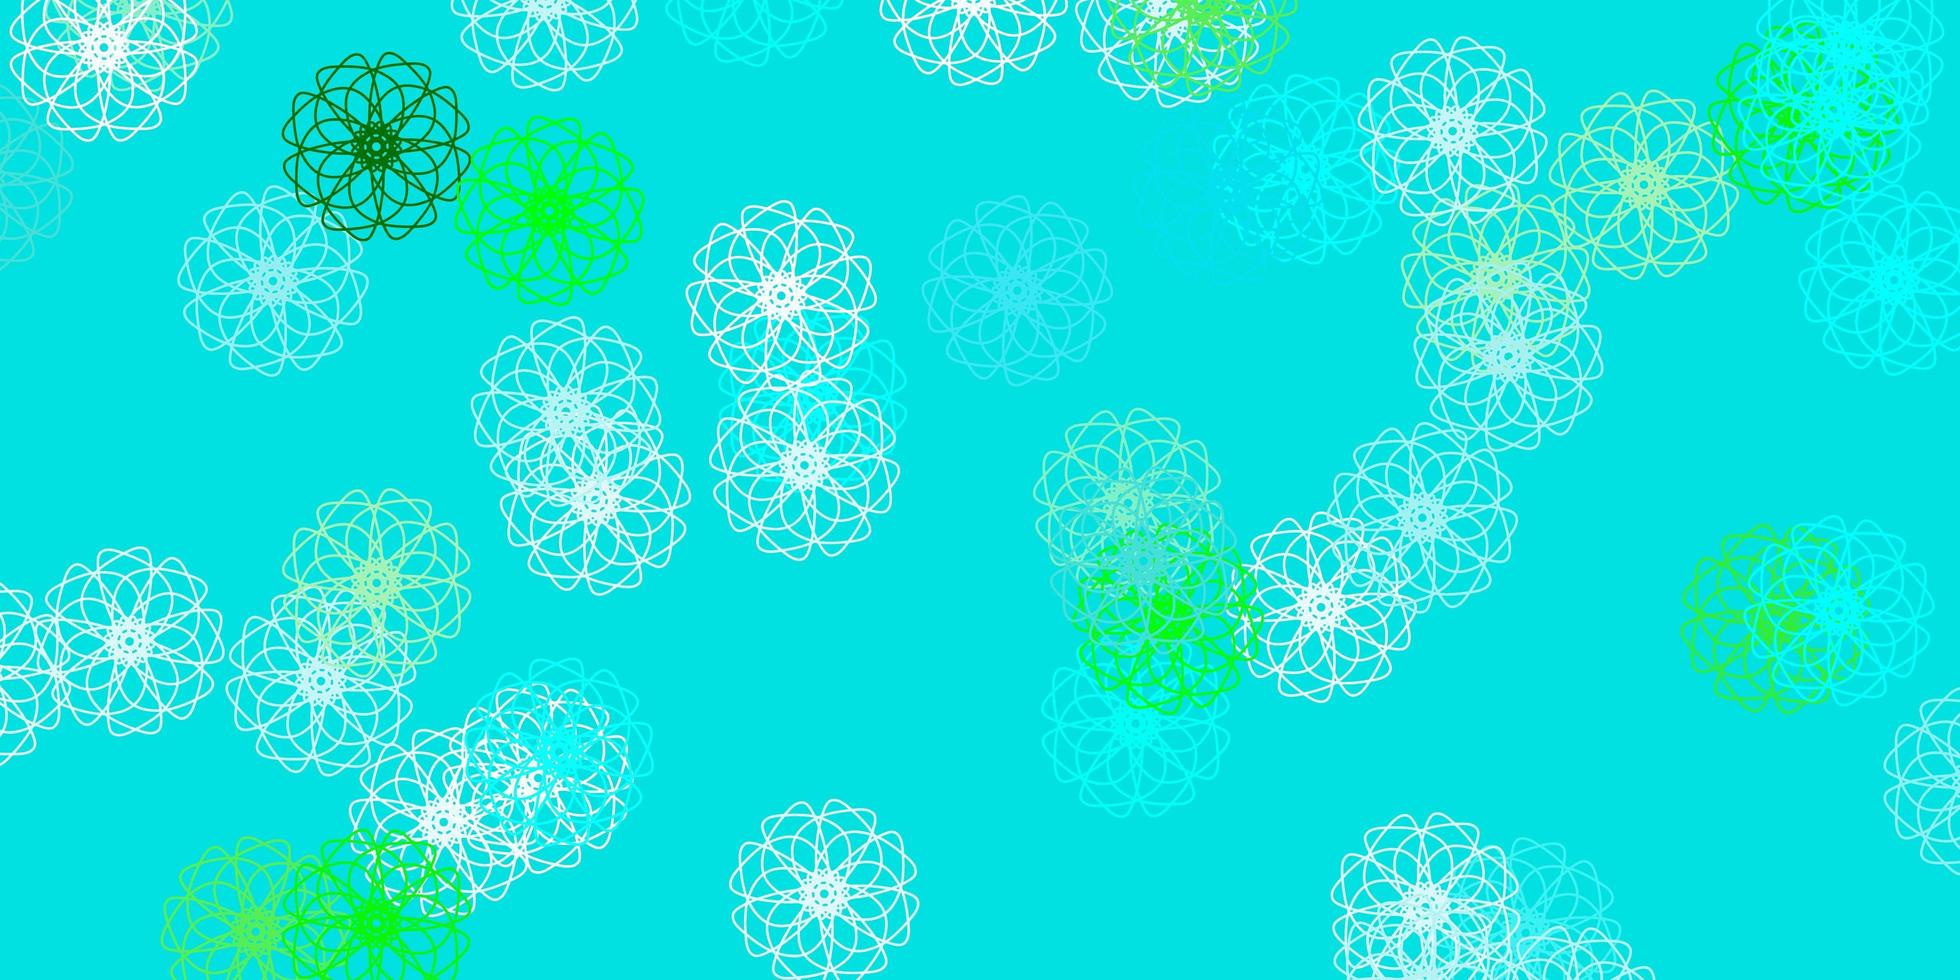 hellblauer, grüner Vektor Gekritzelhintergrund mit Blumen.